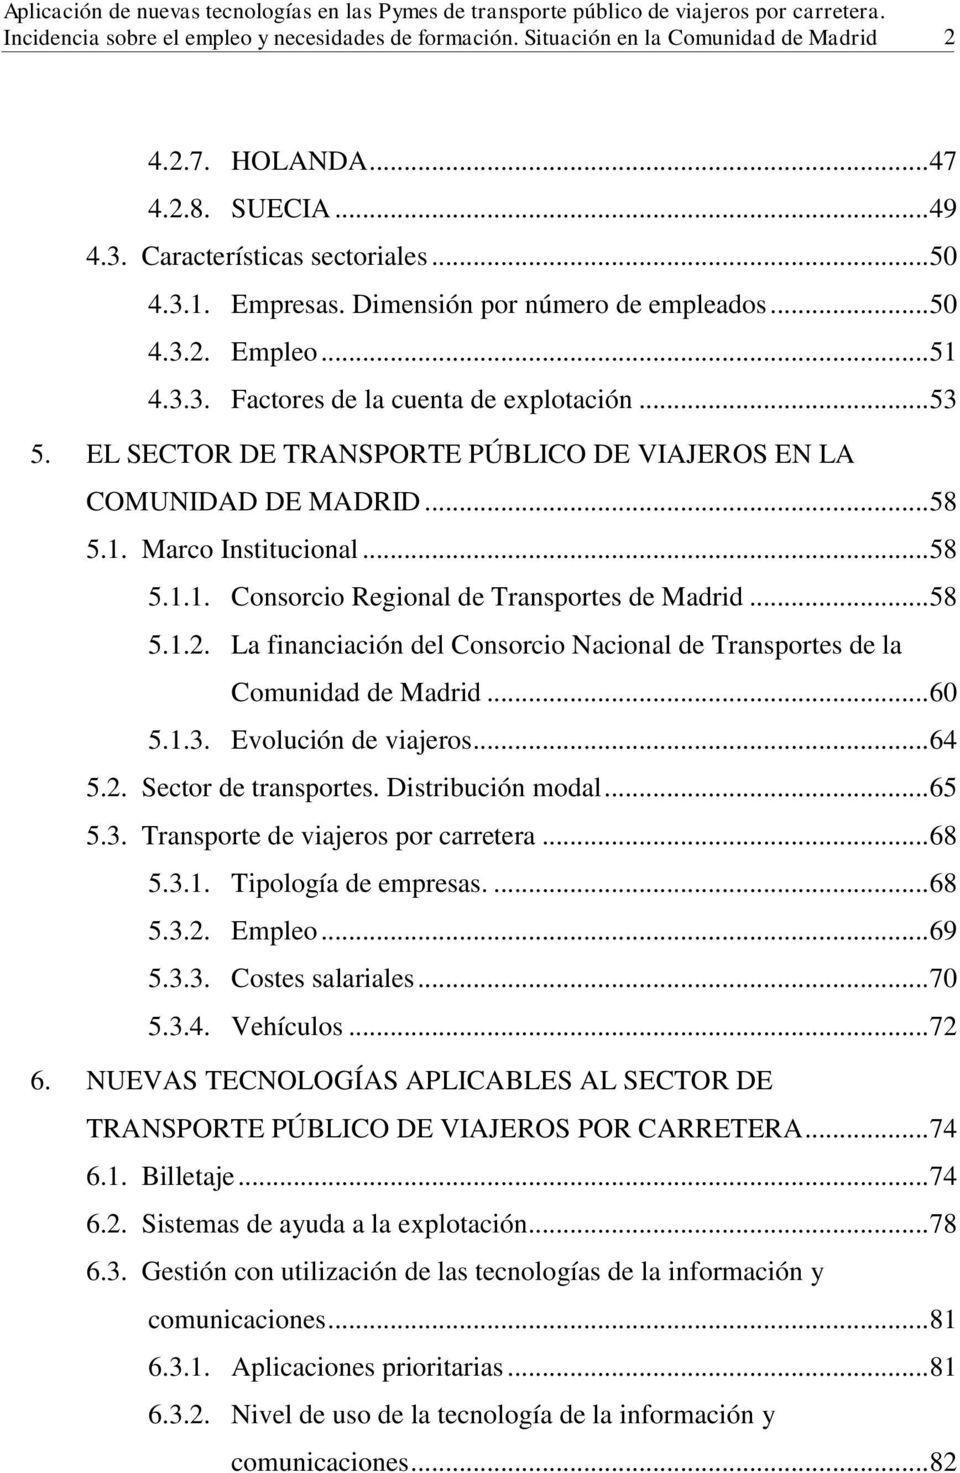 La financiación del Consorcio Nacional de Transportes de la Comunidad de Madrid... 60 5.1.3. Evolución de viajeros... 64 5.2. Sector de transportes. Distribución modal... 65 5.3. Transporte de viajeros por carretera.